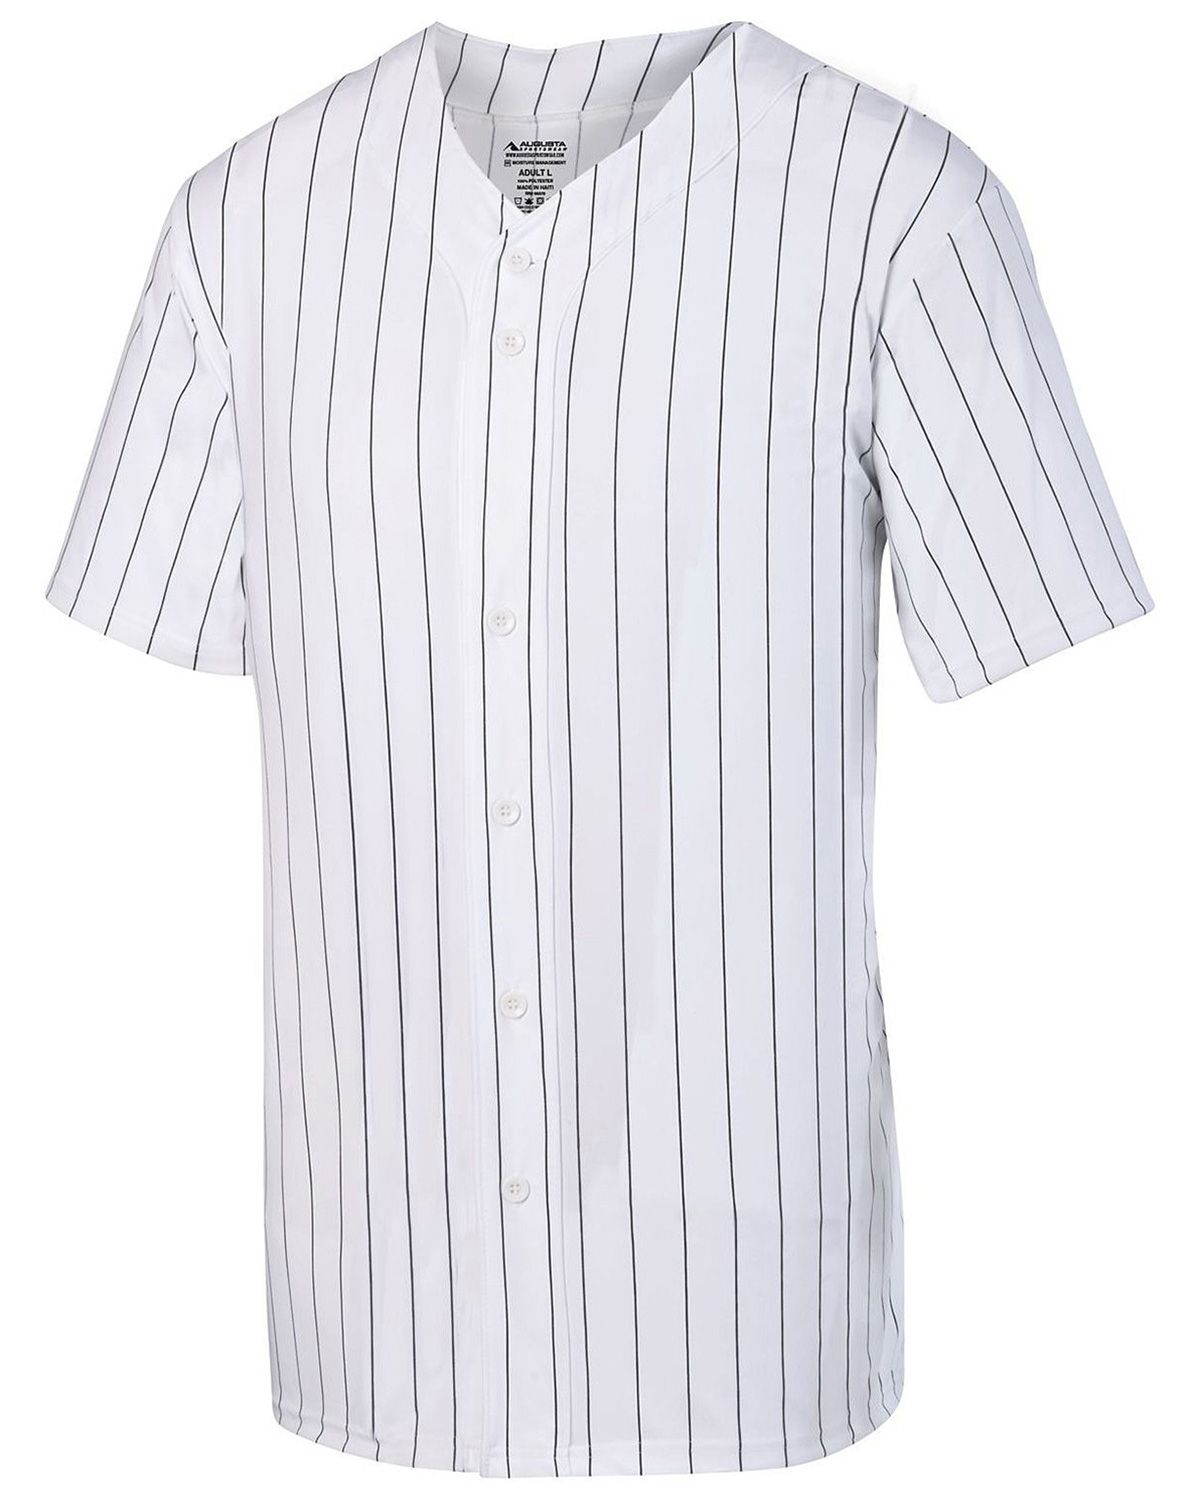 pinstripe baseball jersey wholesale